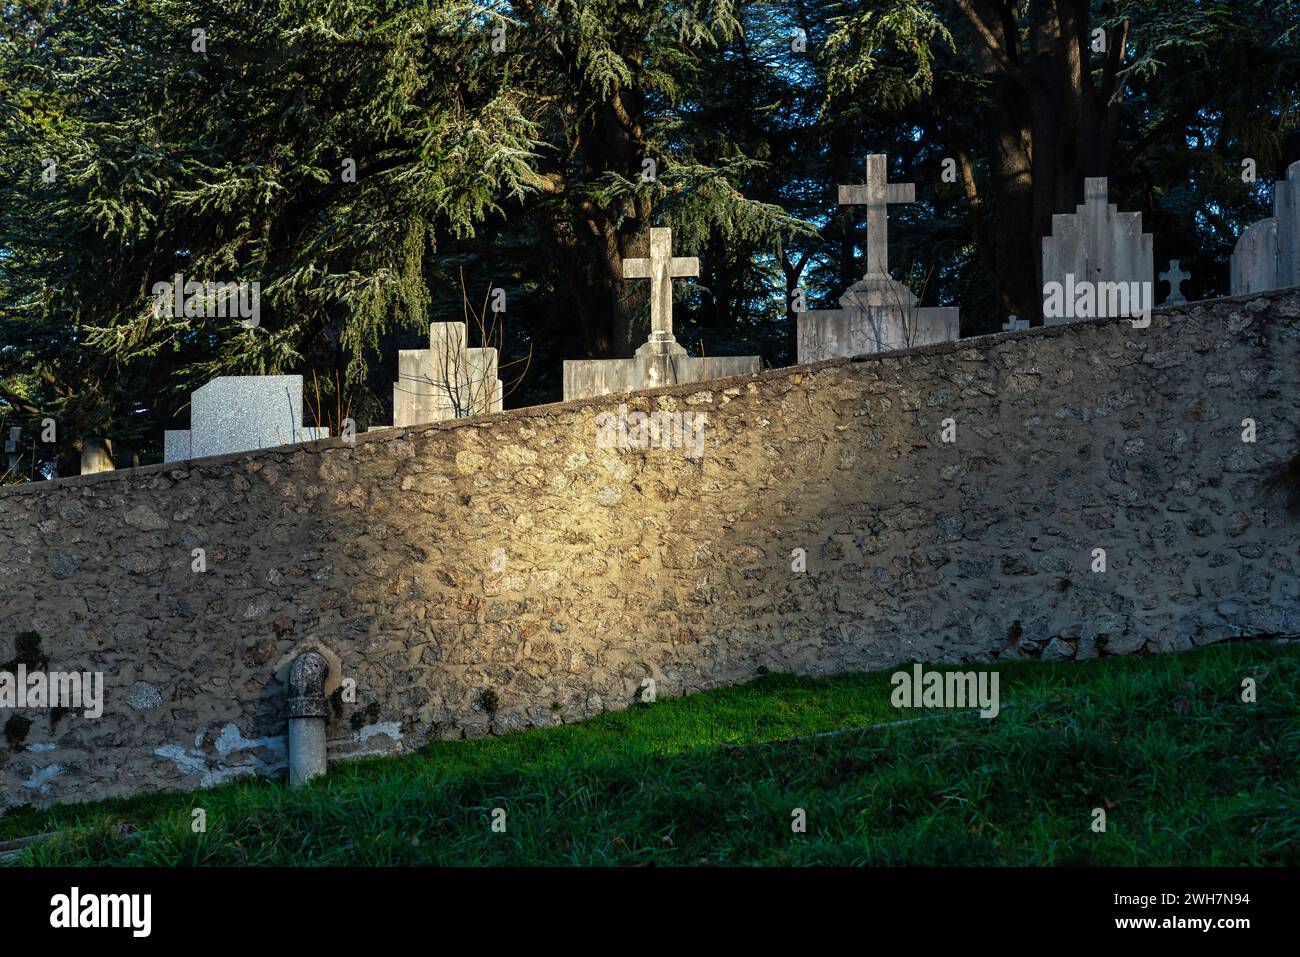 Le cimetière de Firminy, les pierres tombales et les croix des tombes illuminées par un rayon de soleil émergent du mur environnant. Firminy, France Banque D'Images